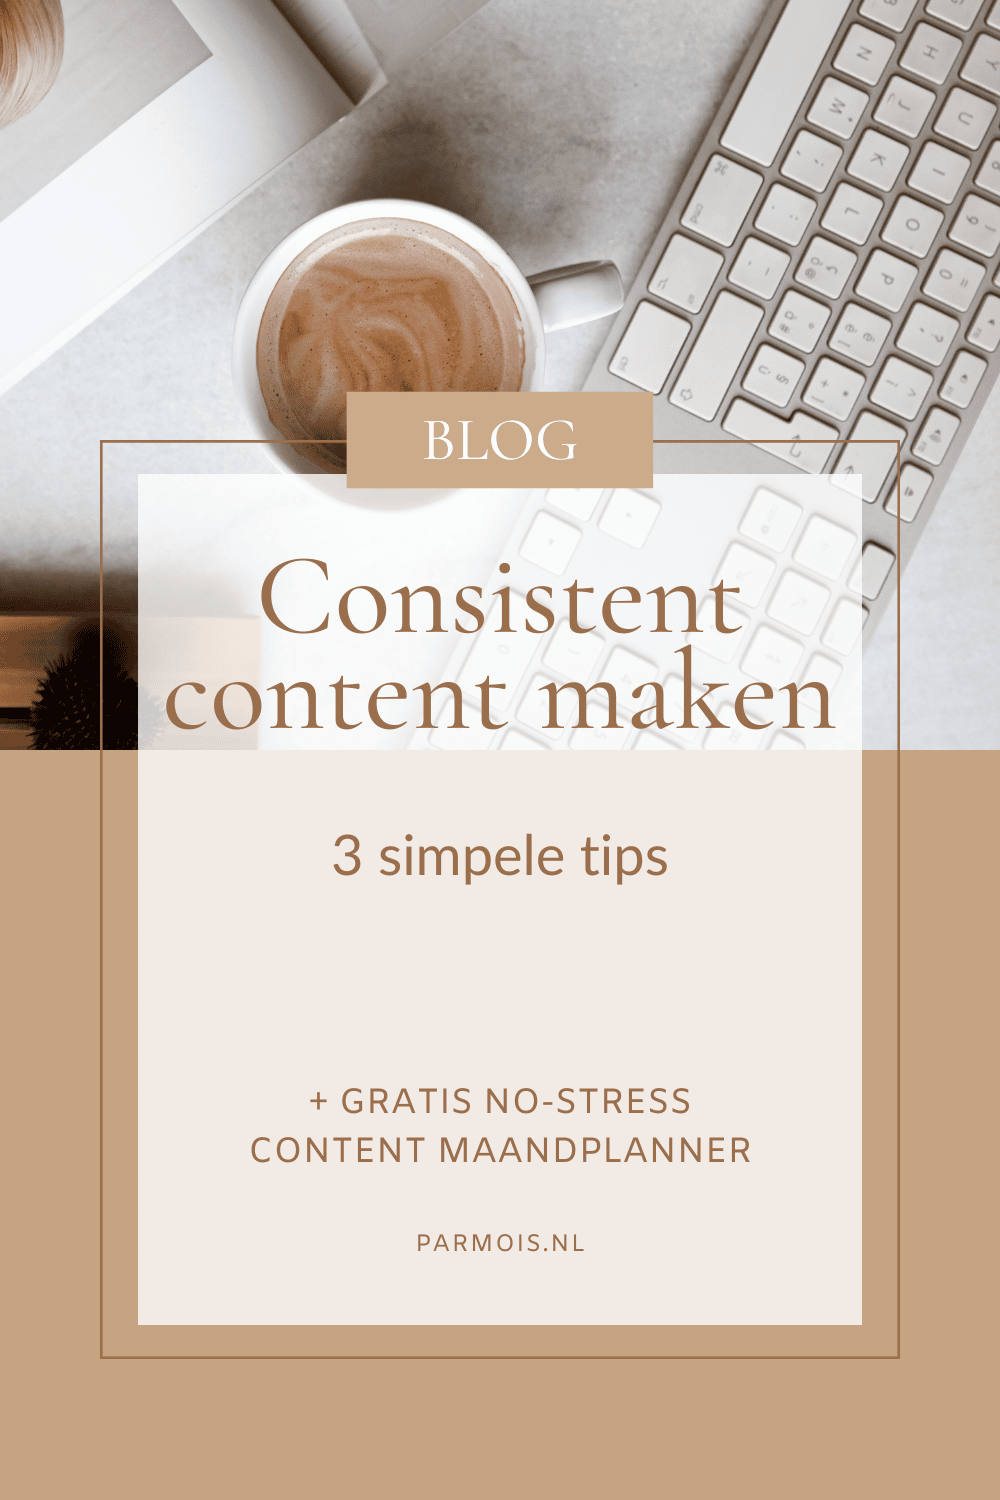 Consistent content maken: 3 eenvoudige tips die voor meer consistentie zorgen